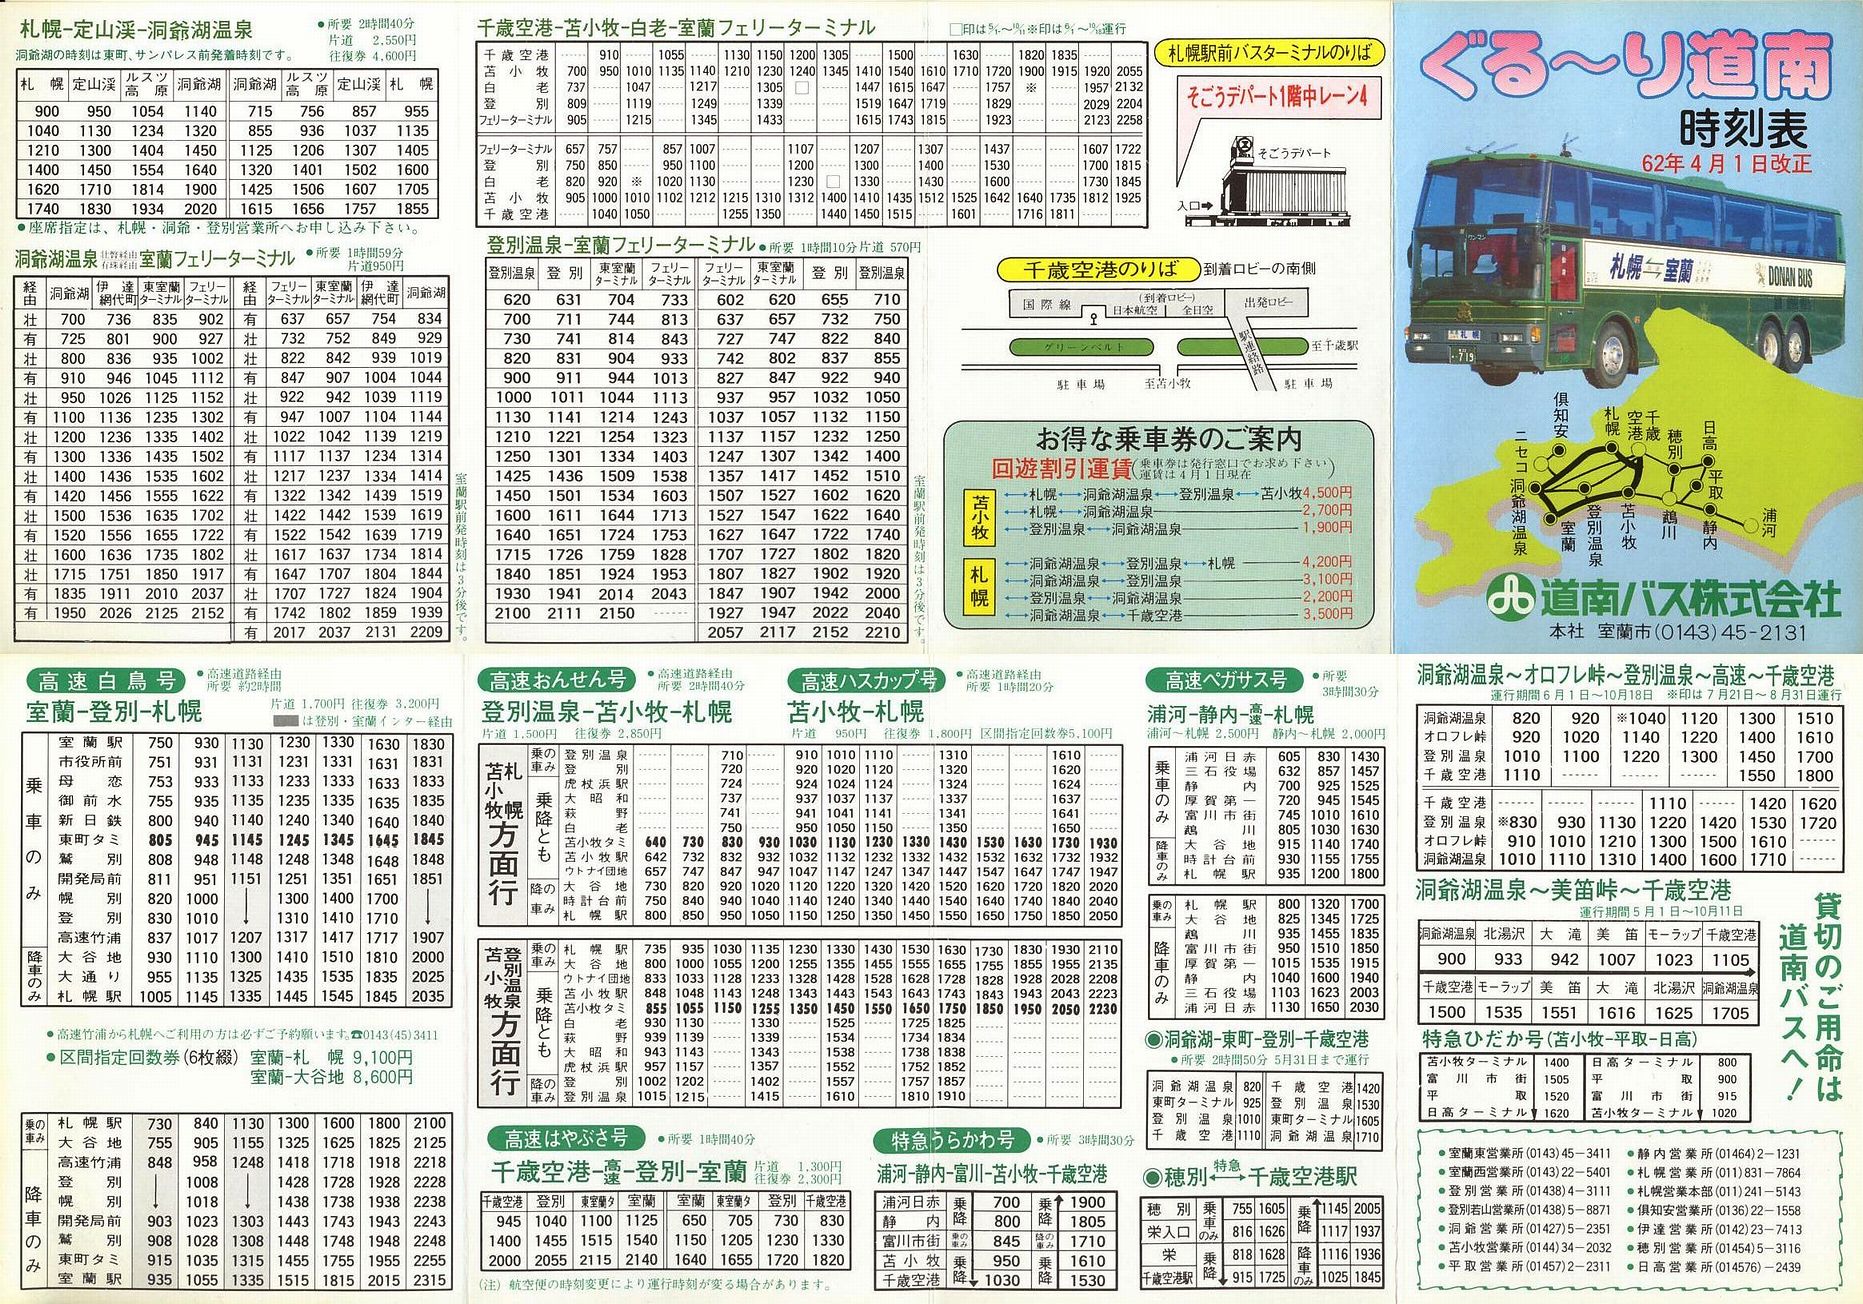 1987-04-01改正_道南バス_ぐるーり道南時刻表